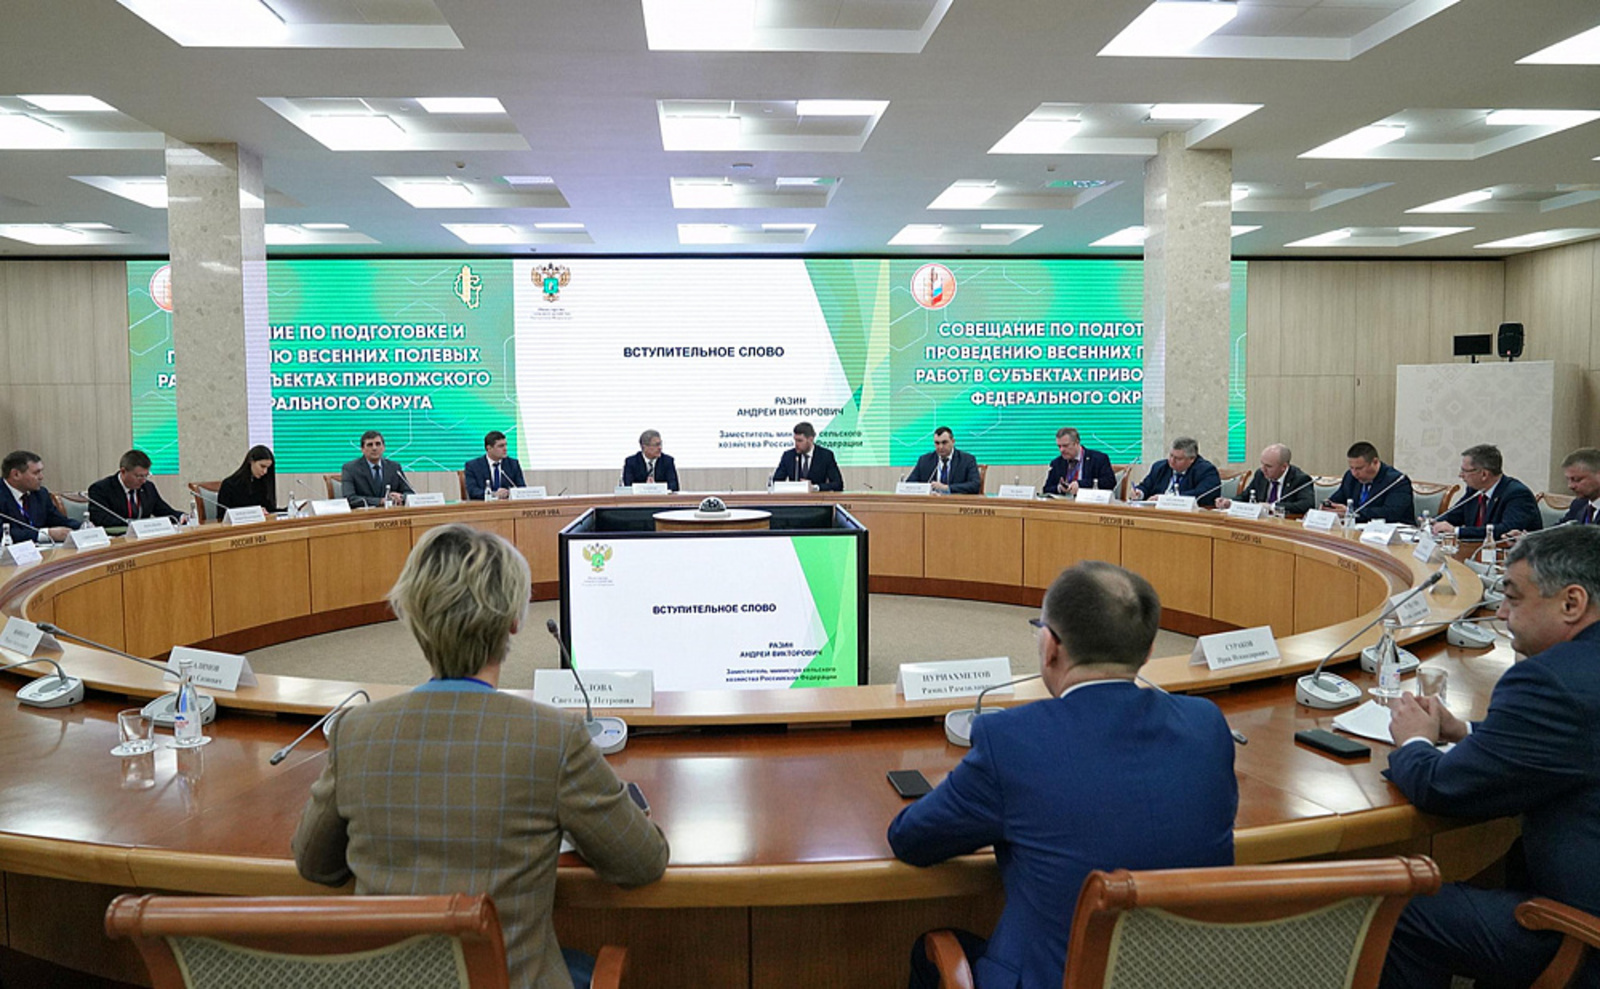 Радий Хабиров обозначил приоритеты агропромышленной политики Башкортостана